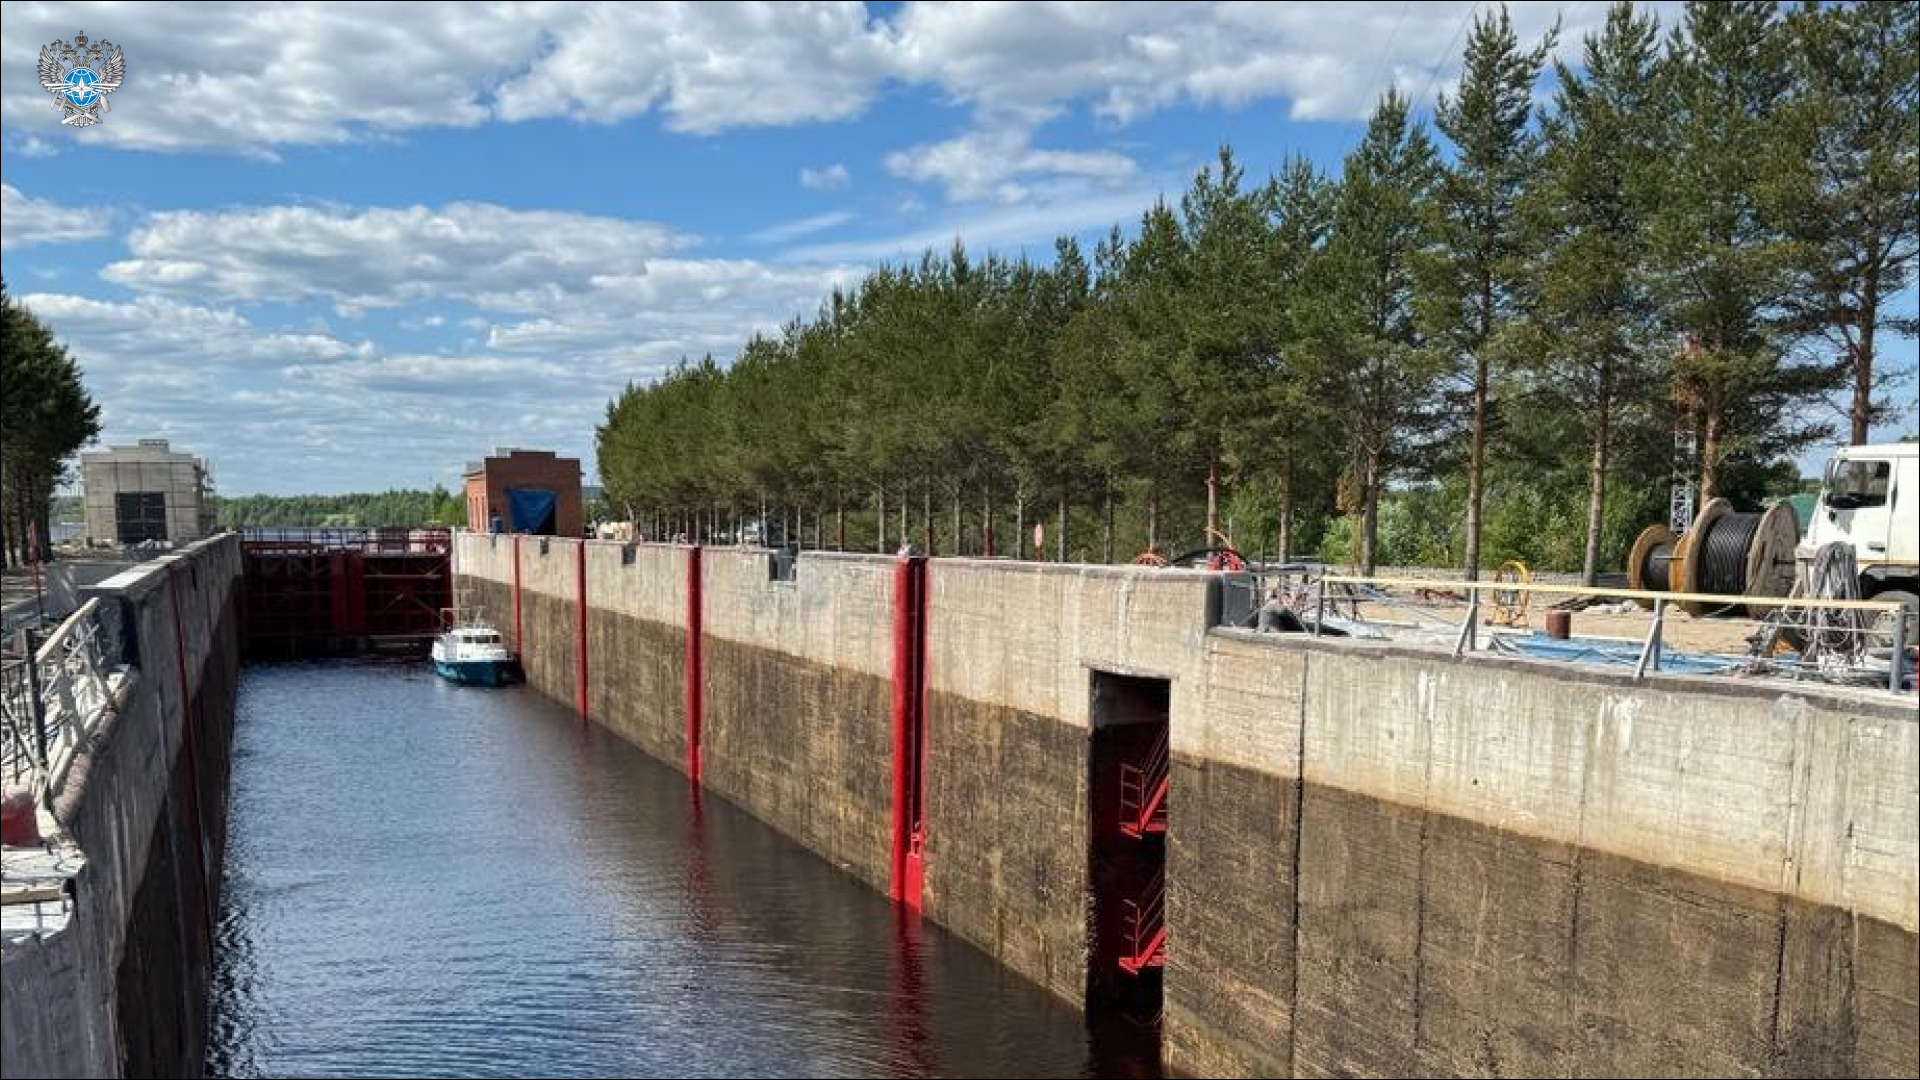 Продолжается реконструкция Шаваньской плотины №23 и Шлюза №16 Беломорско-Балтийского канала в Республики Карелия